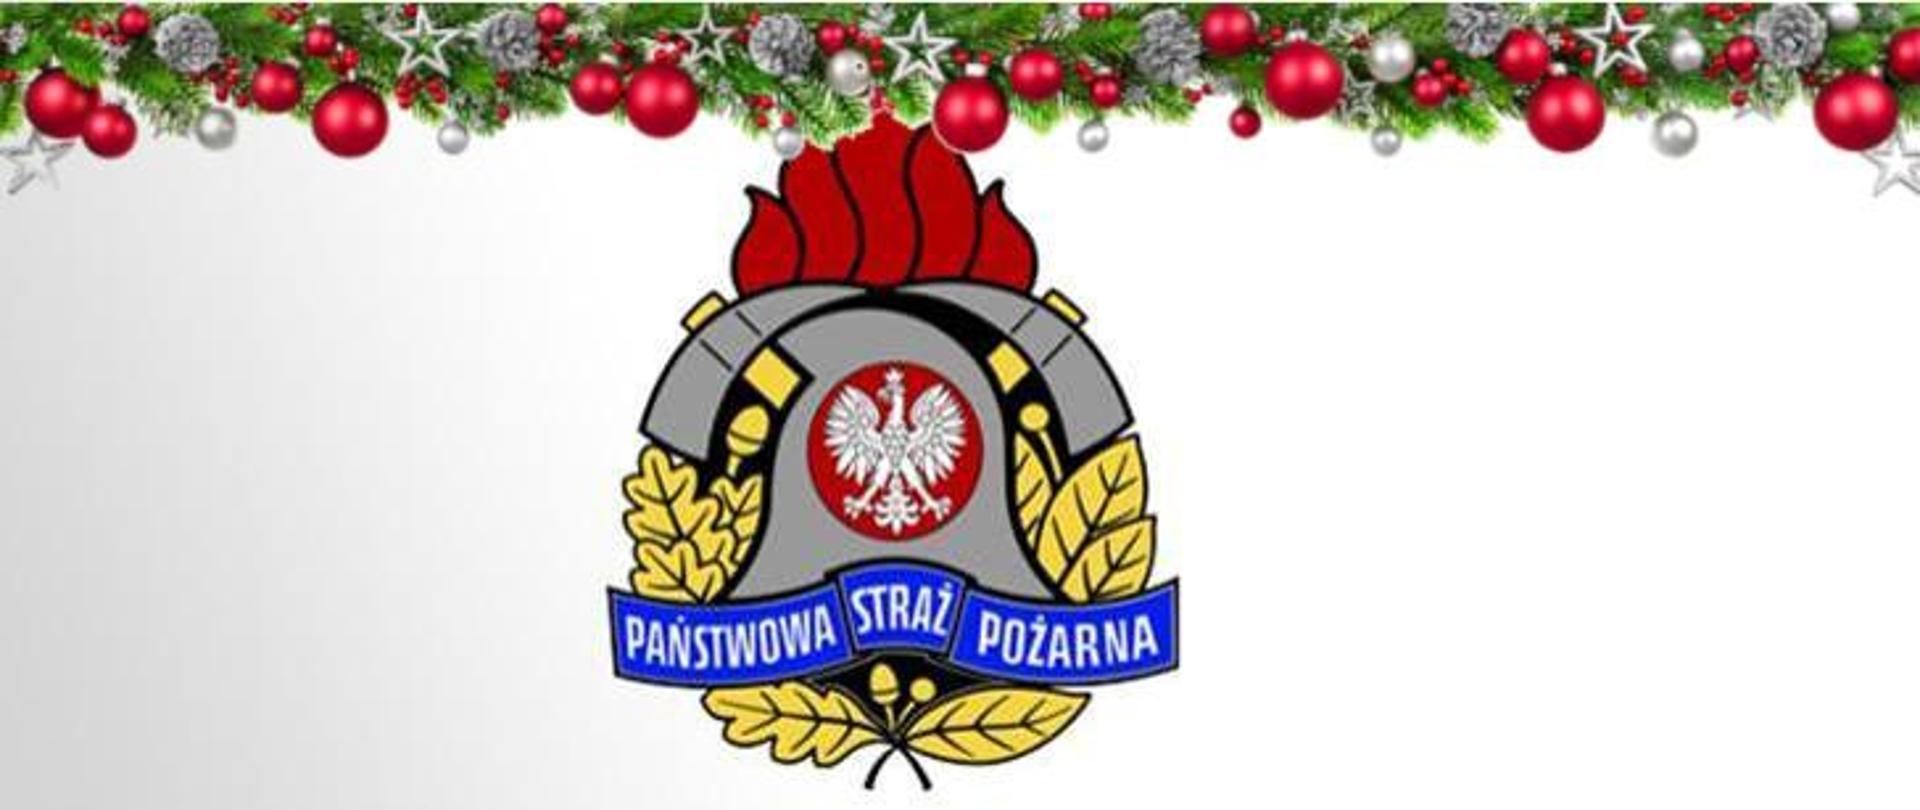 Logo Państwowej Straży Pożarnej udekorowane na górze w ozdoby świąteczne